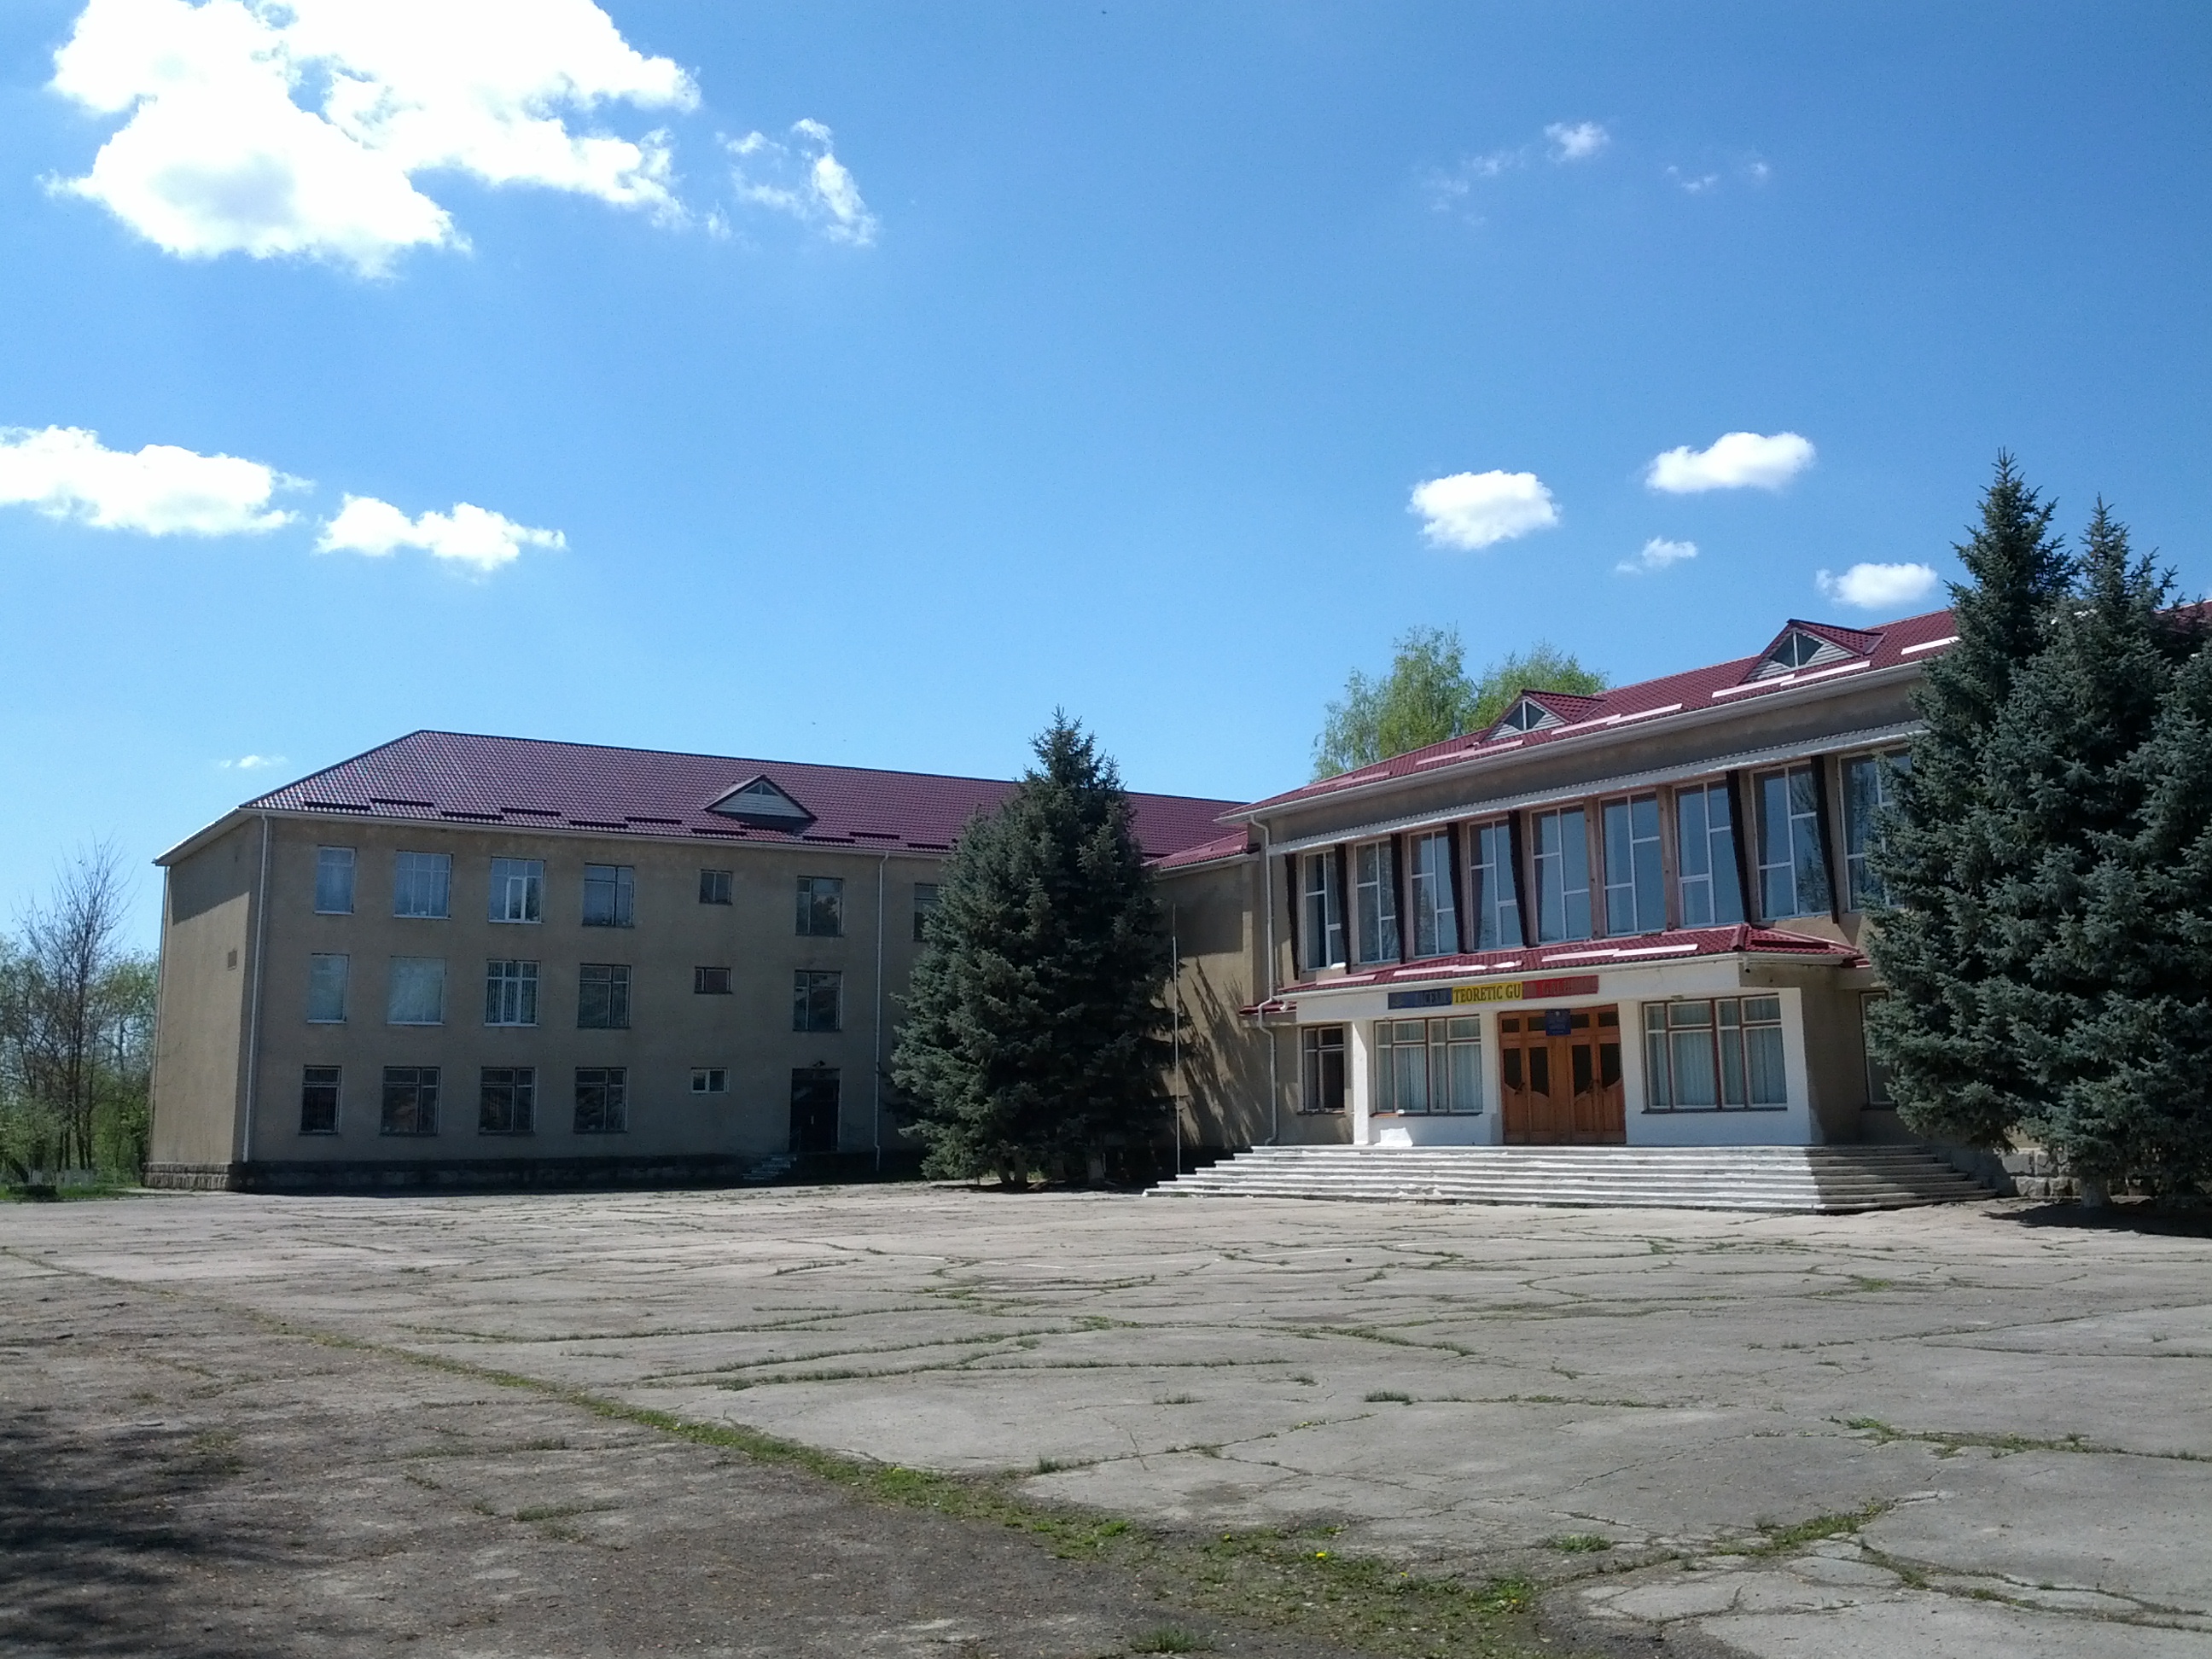 MD, District Cimislia, Satul Gura Galbenei, Liceul Teoretic Hyperion, Blocul principal si blocul cu 3 etaje